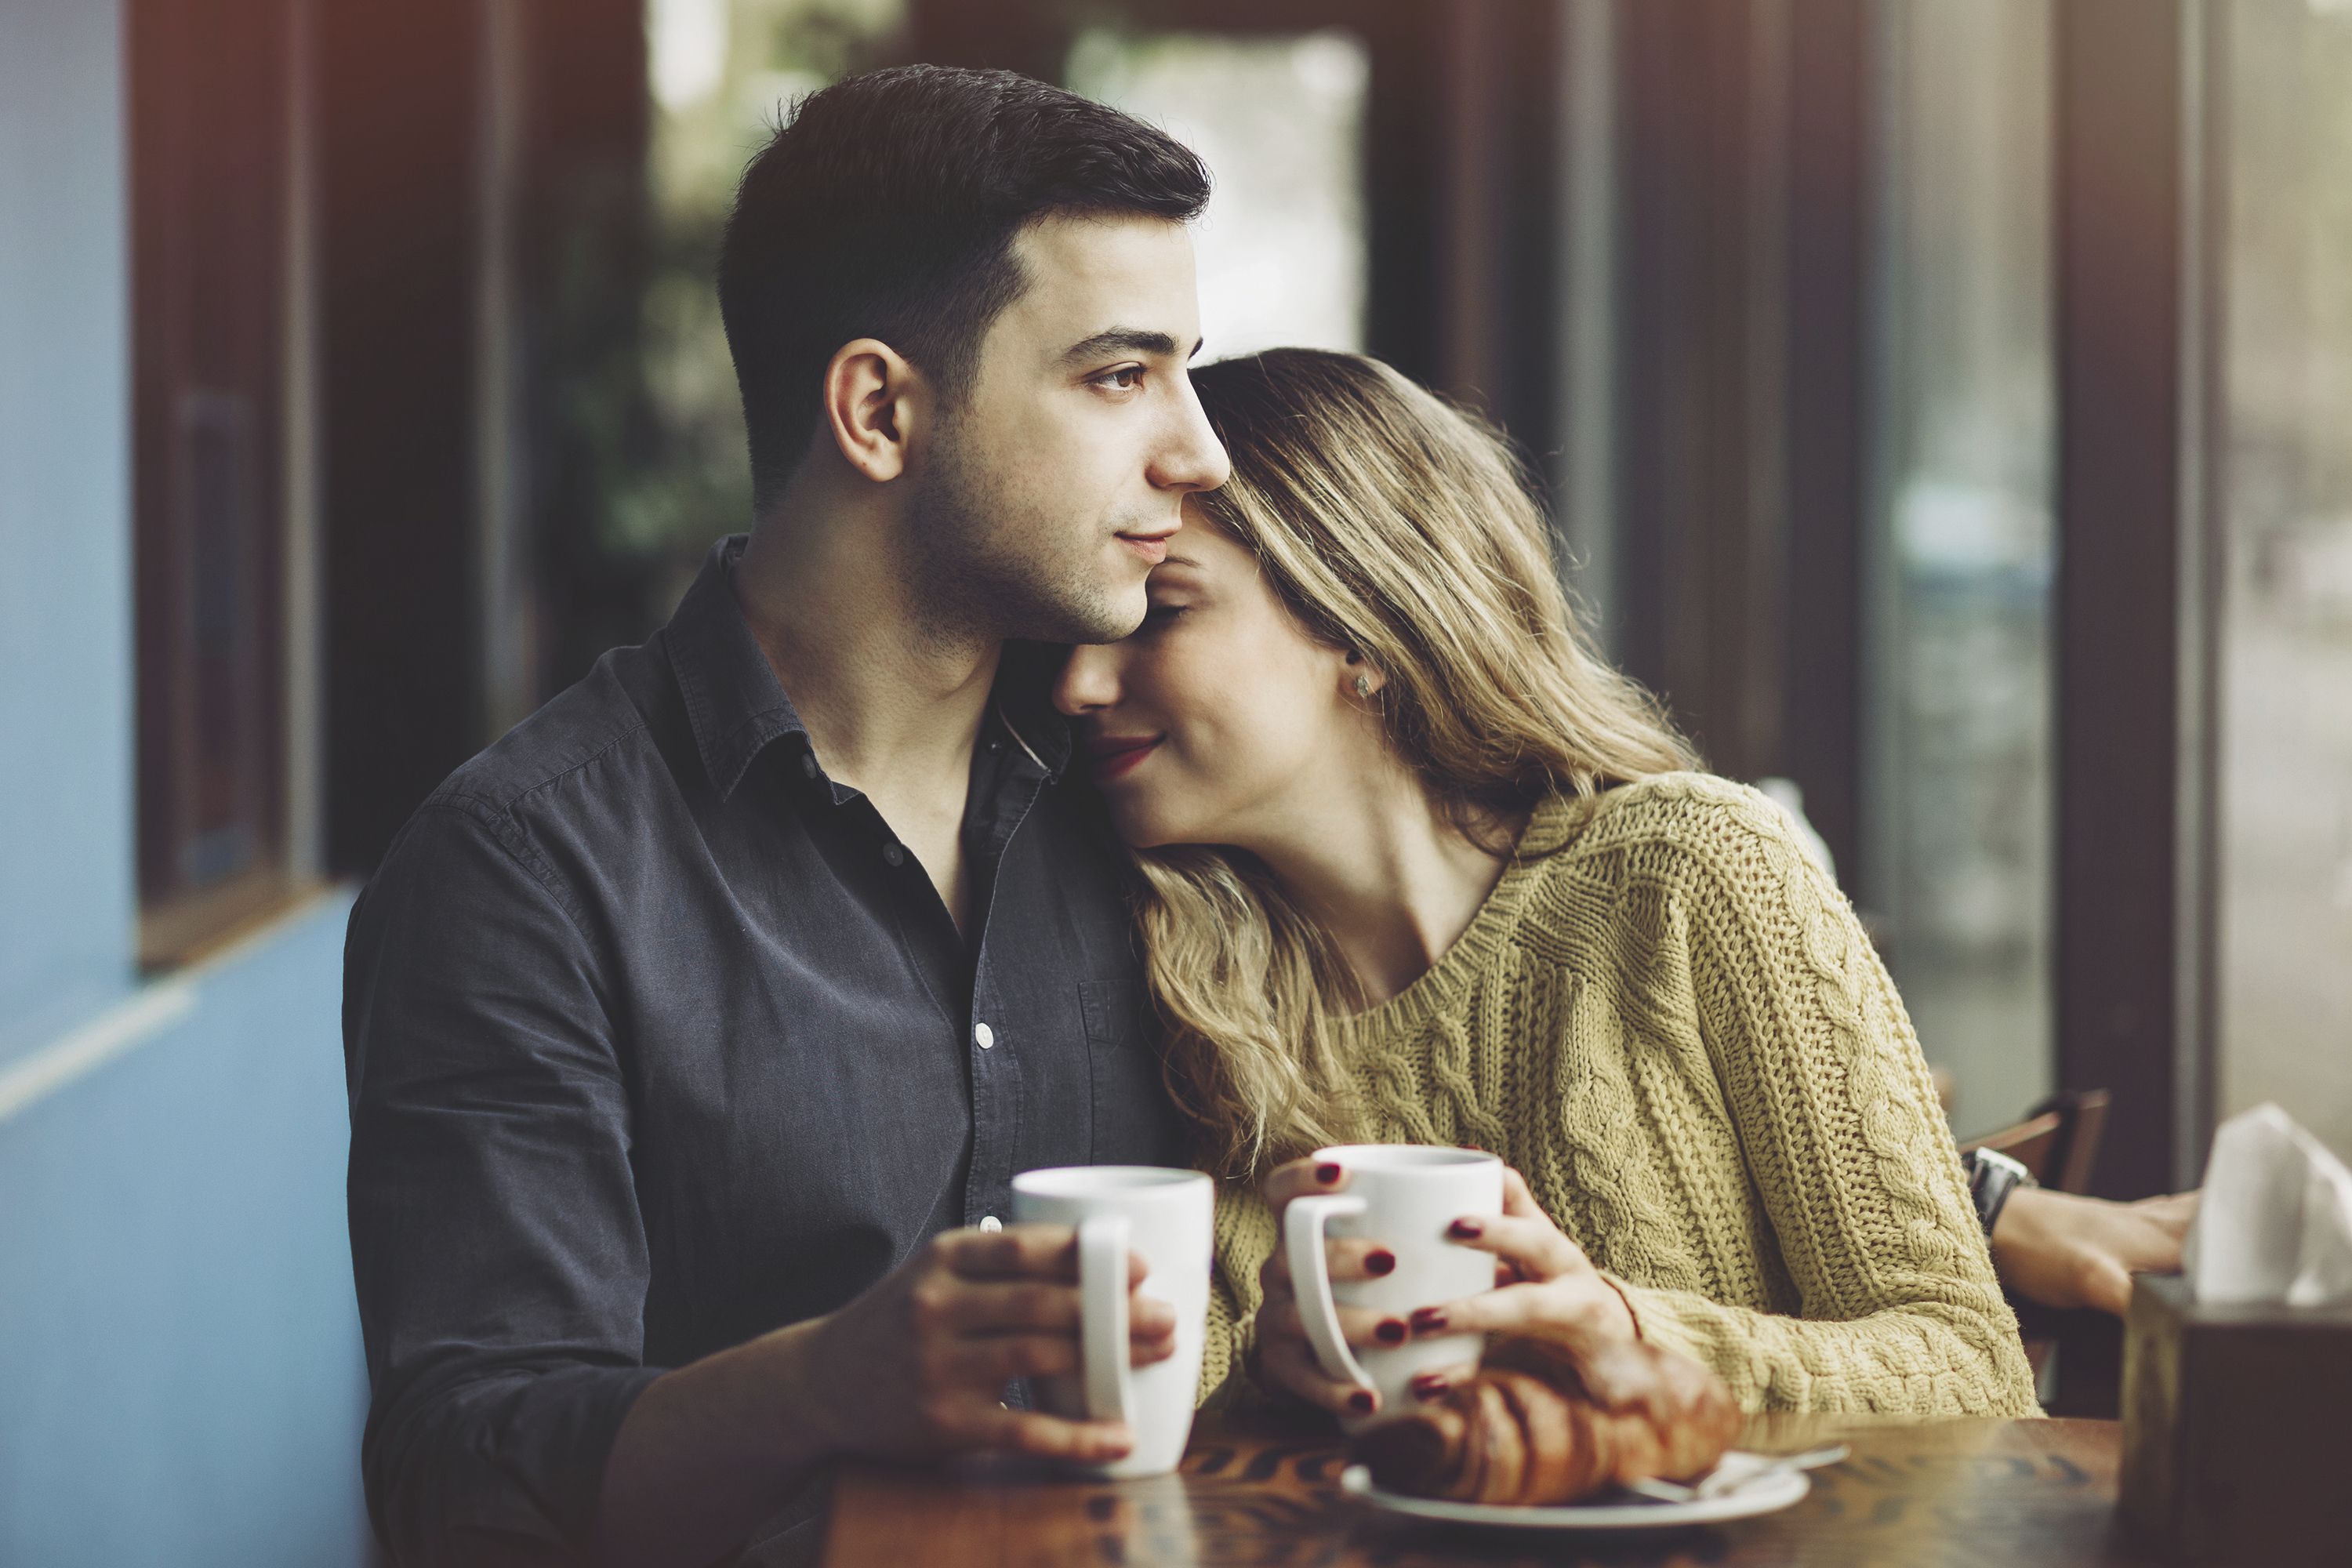 21 რამ, რაც მამაკაცს უკეთეს მეუღლედ აქცევს - წააკითხეთ ქმრებს